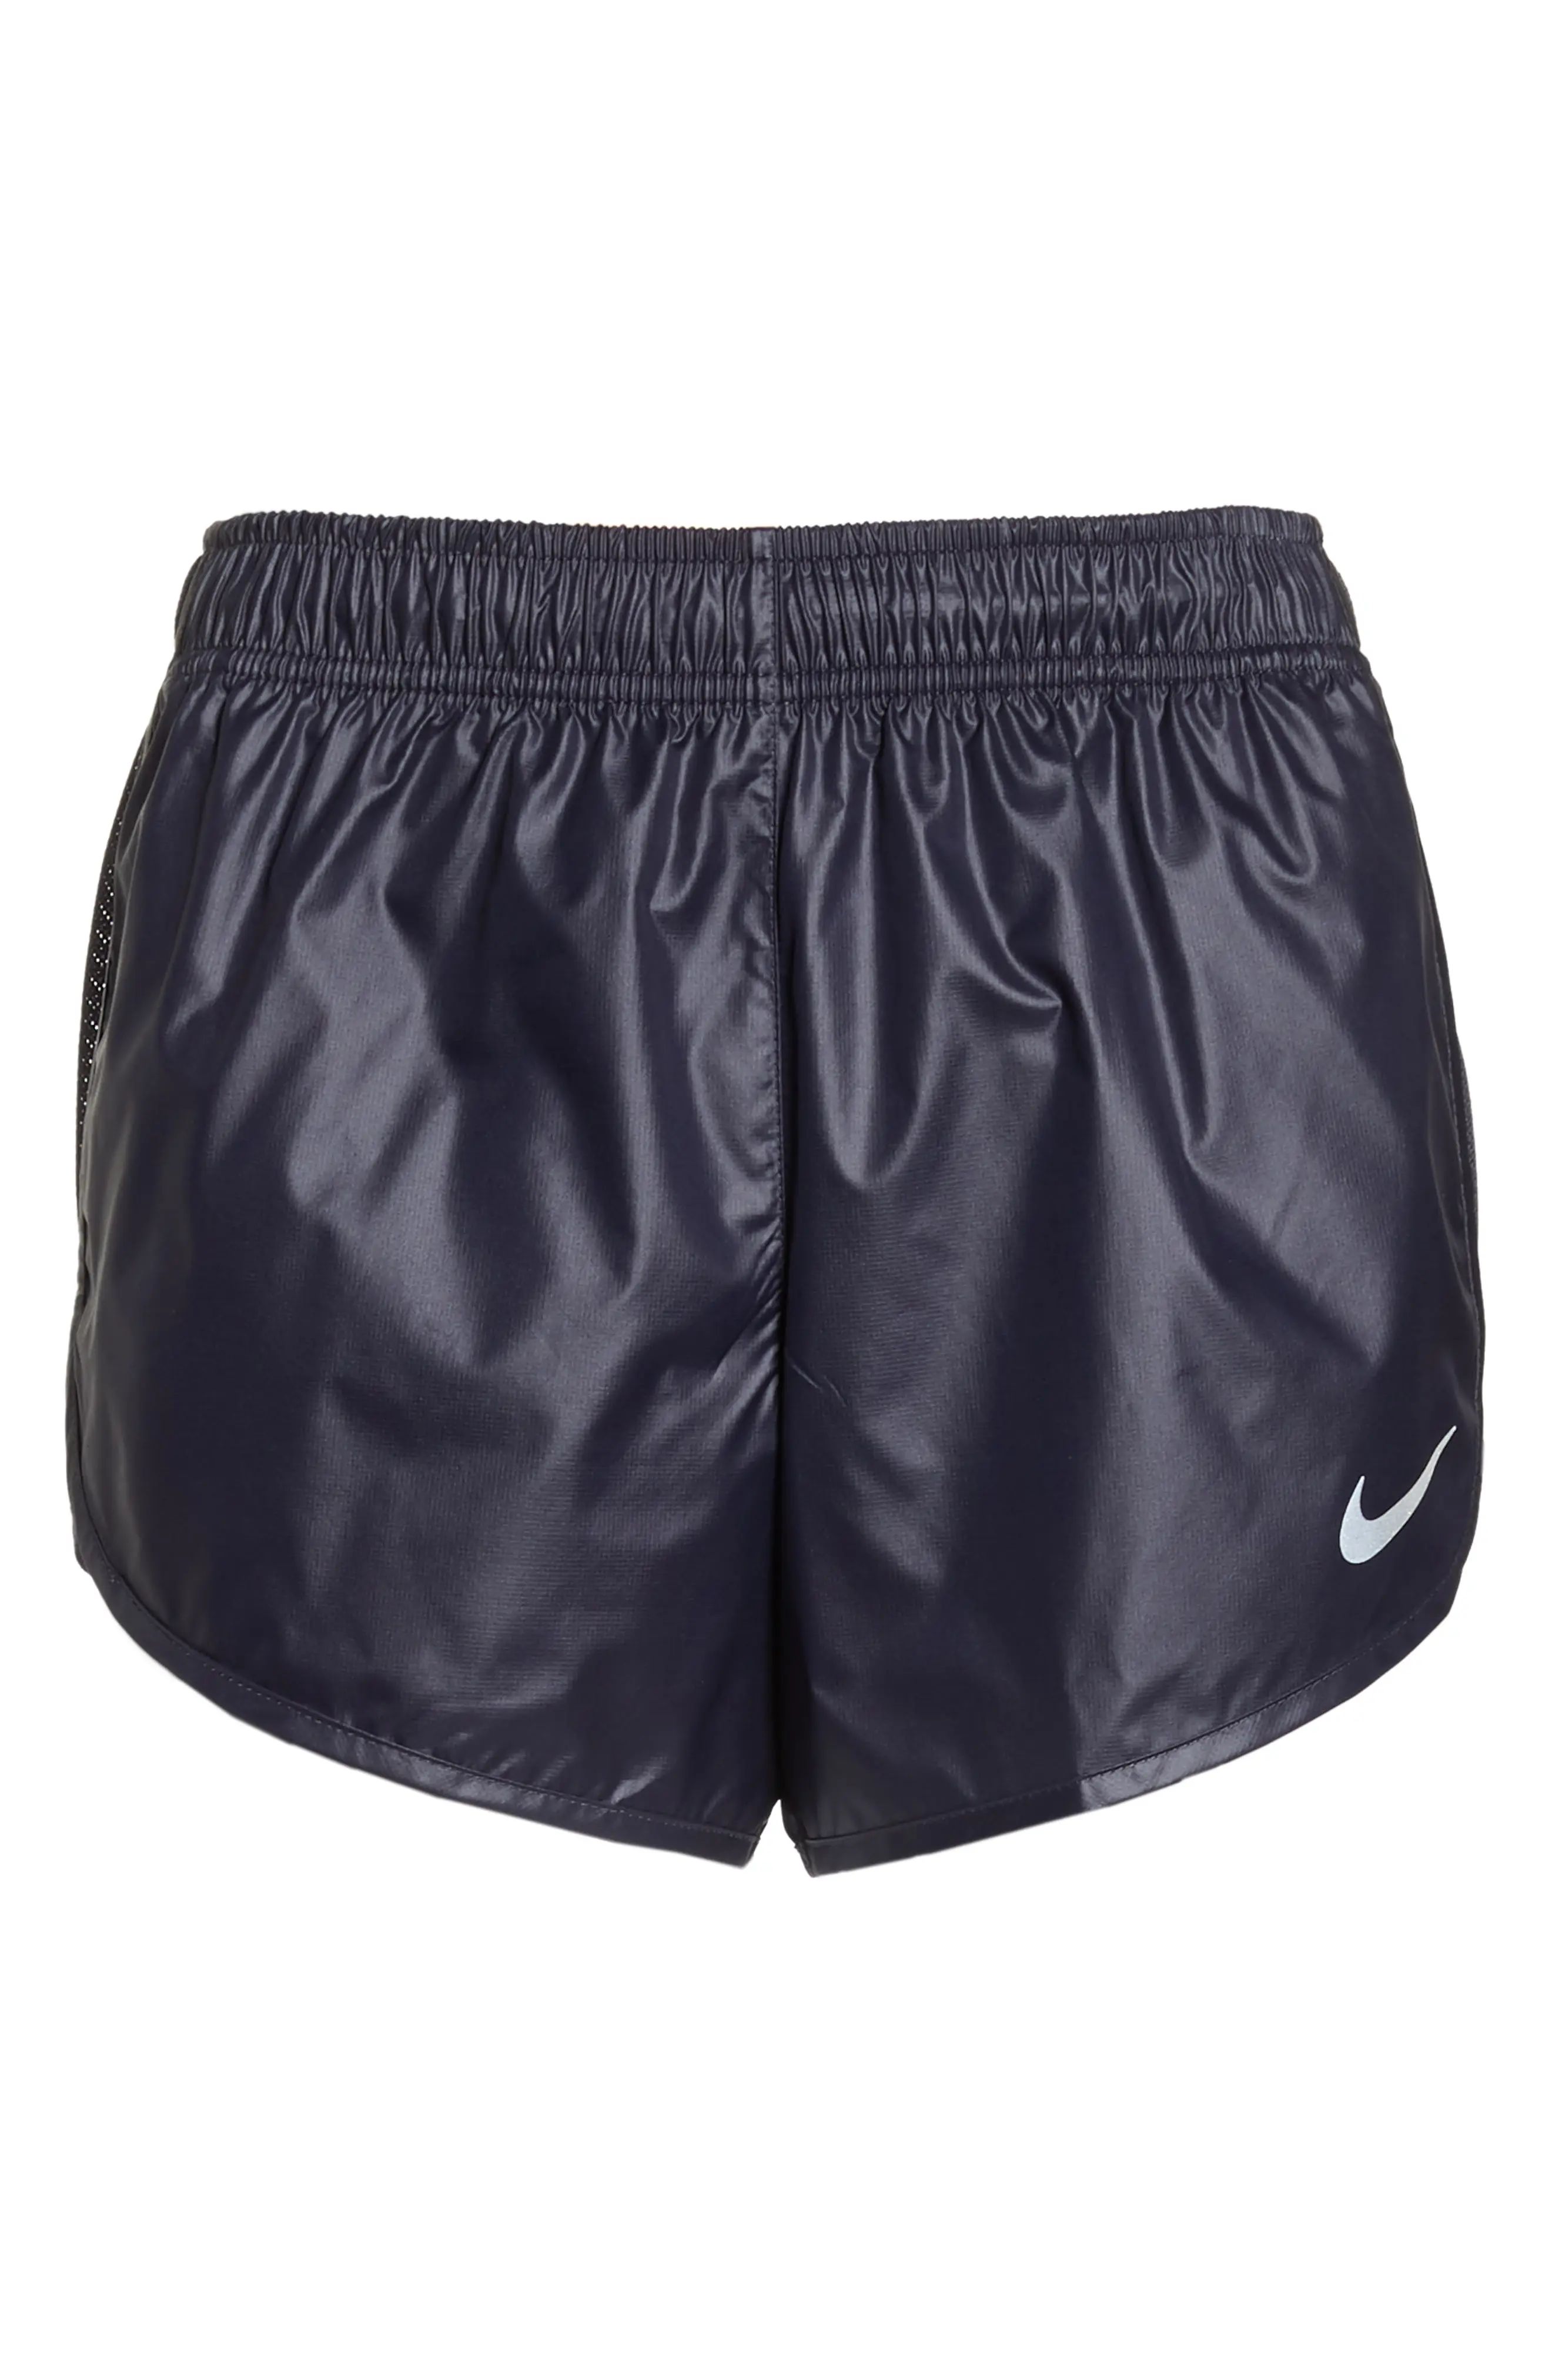 Nike Tempo Running Shorts (Regular Retail Price: $35.00) | Nordstrom